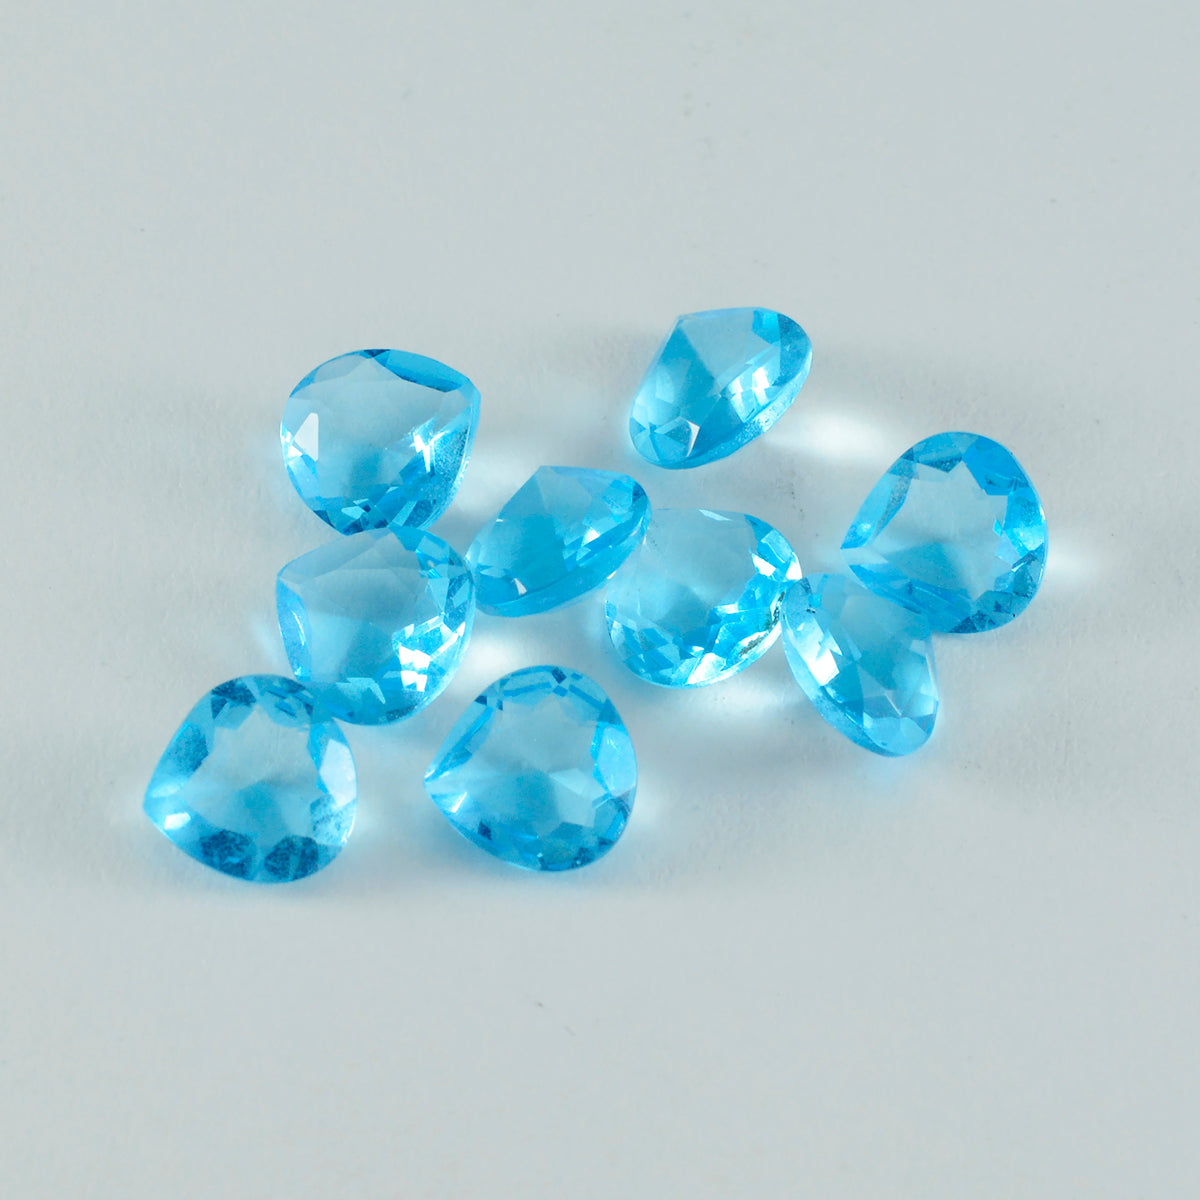 riyogems 1 шт. синий топаз cz ограненный 4x4 мм в форме сердца красивые качественные драгоценные камни